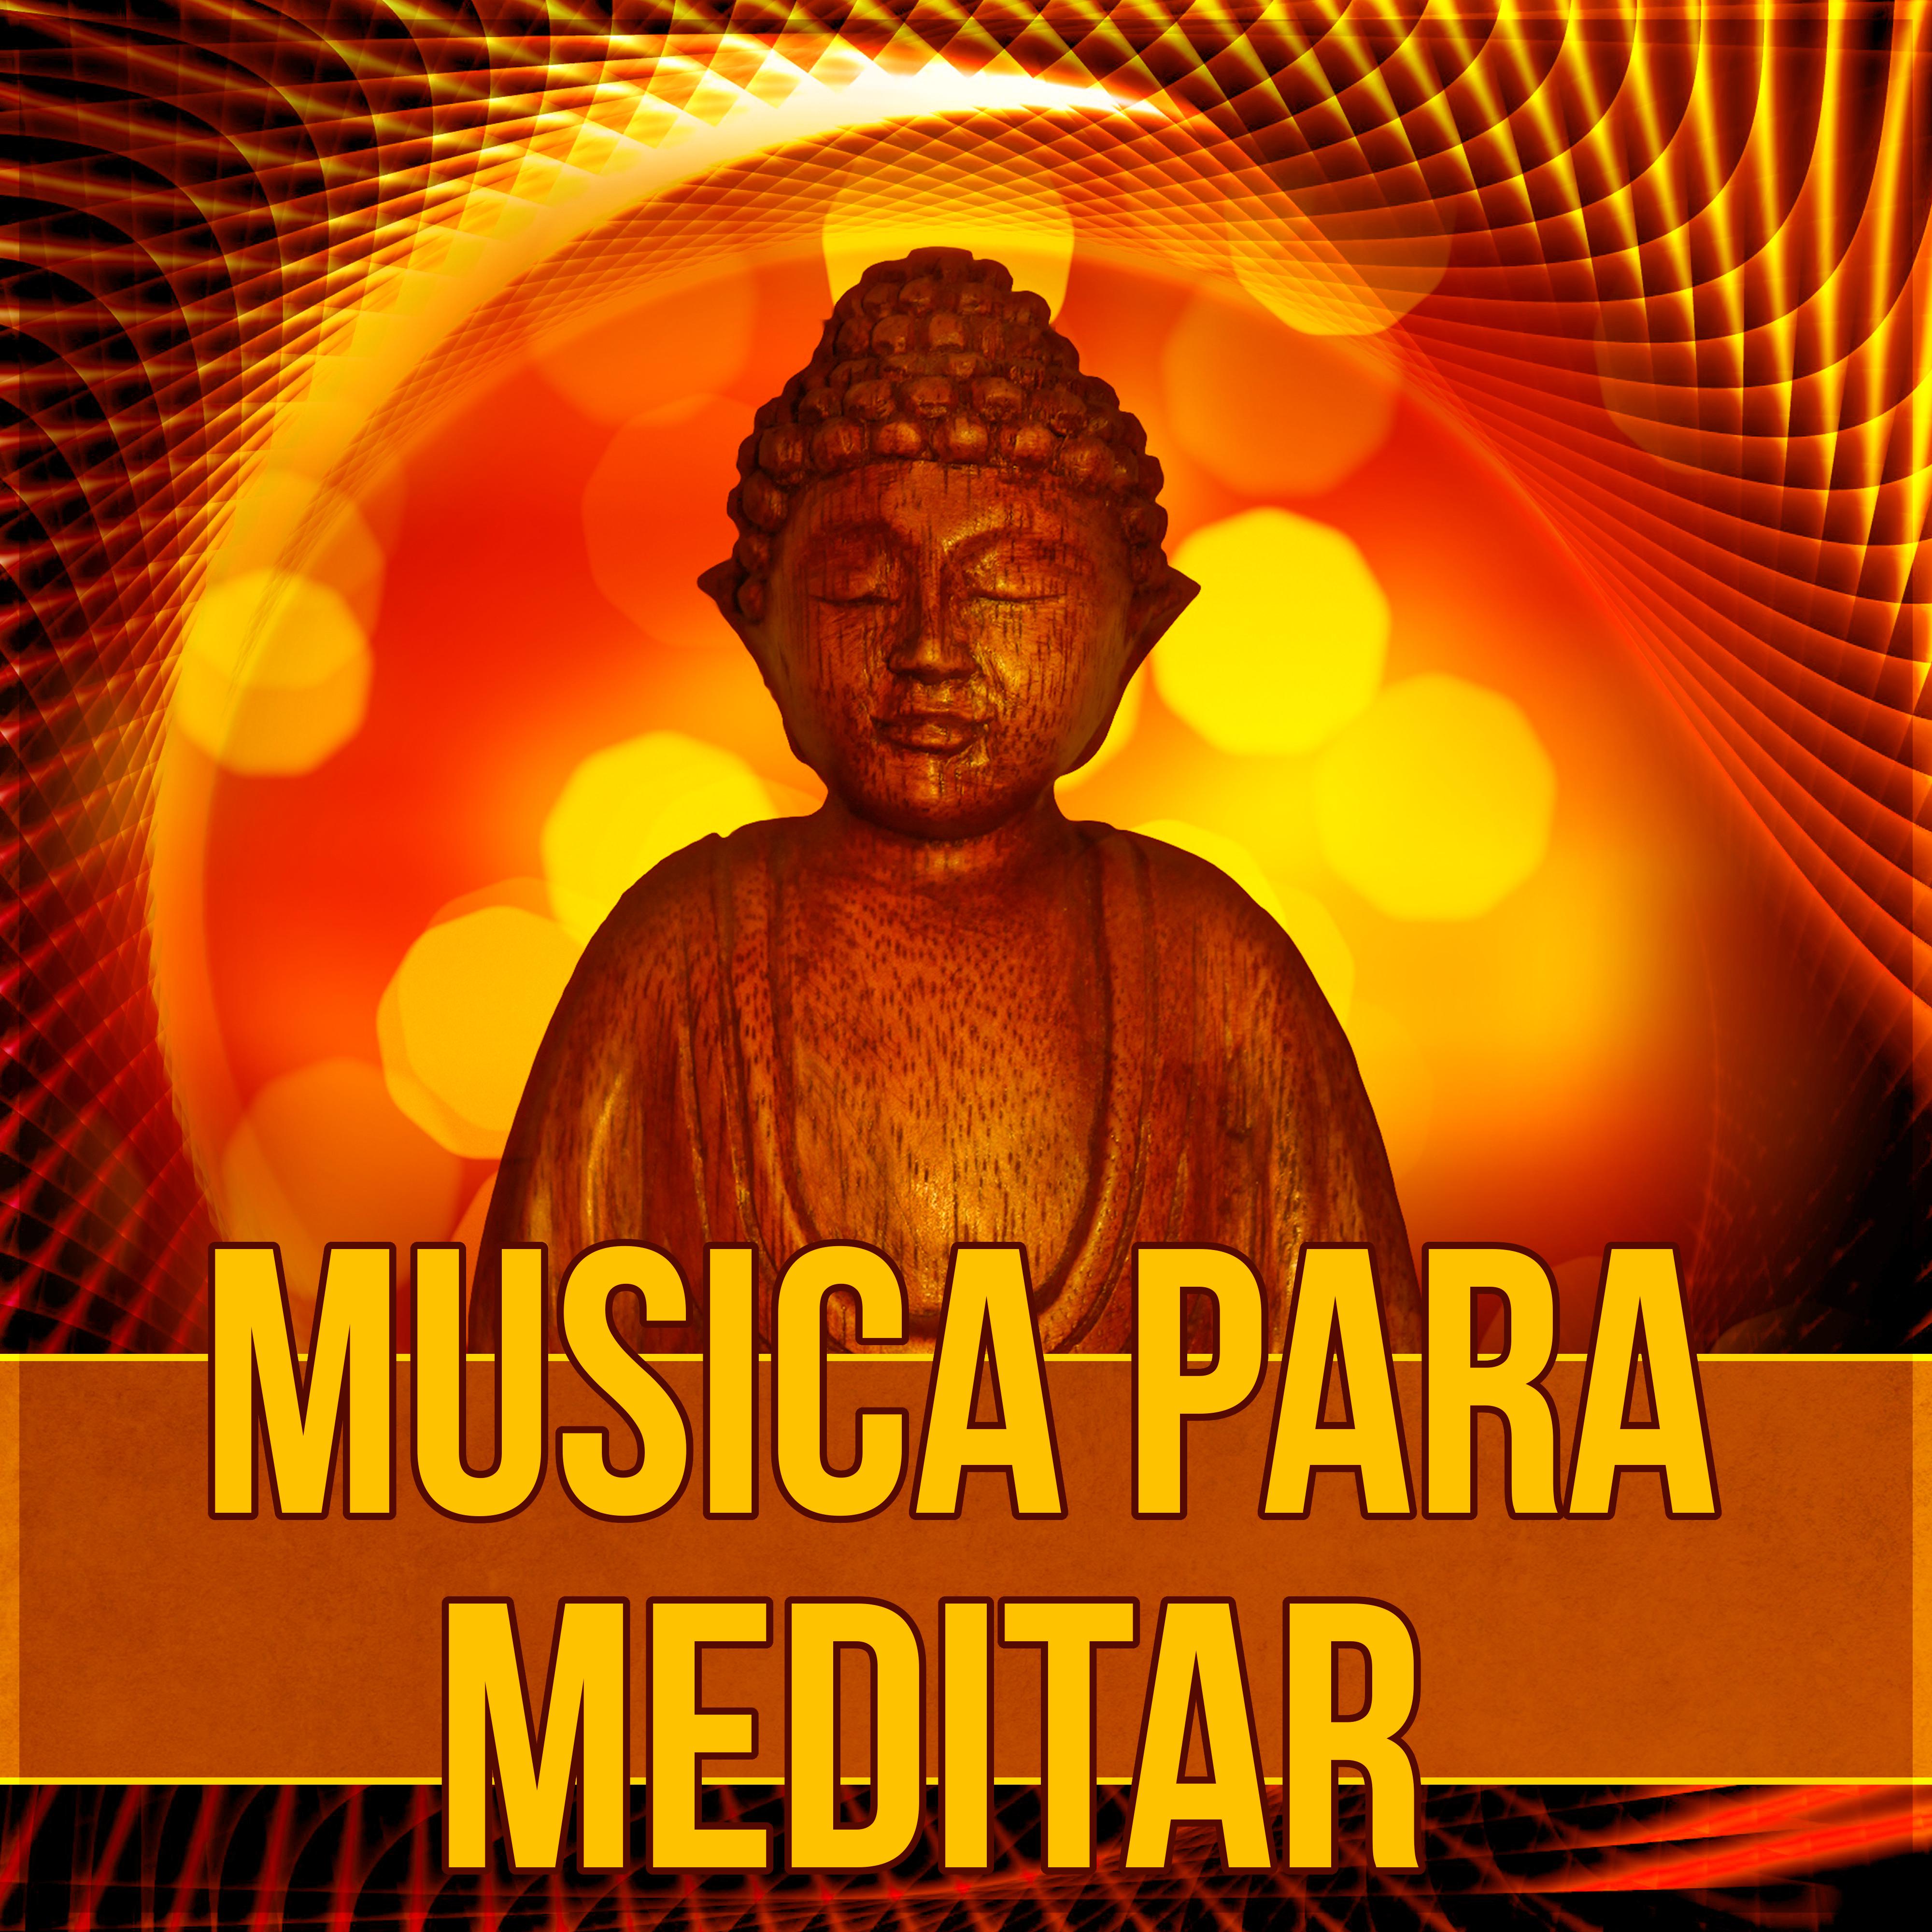 Musica para Meditar – Relajacion, Practicar Yoga, Musica Ambiente, Musica Instrumental, Masaje, Reiki, Zen, Spa, Massage, Meditacion